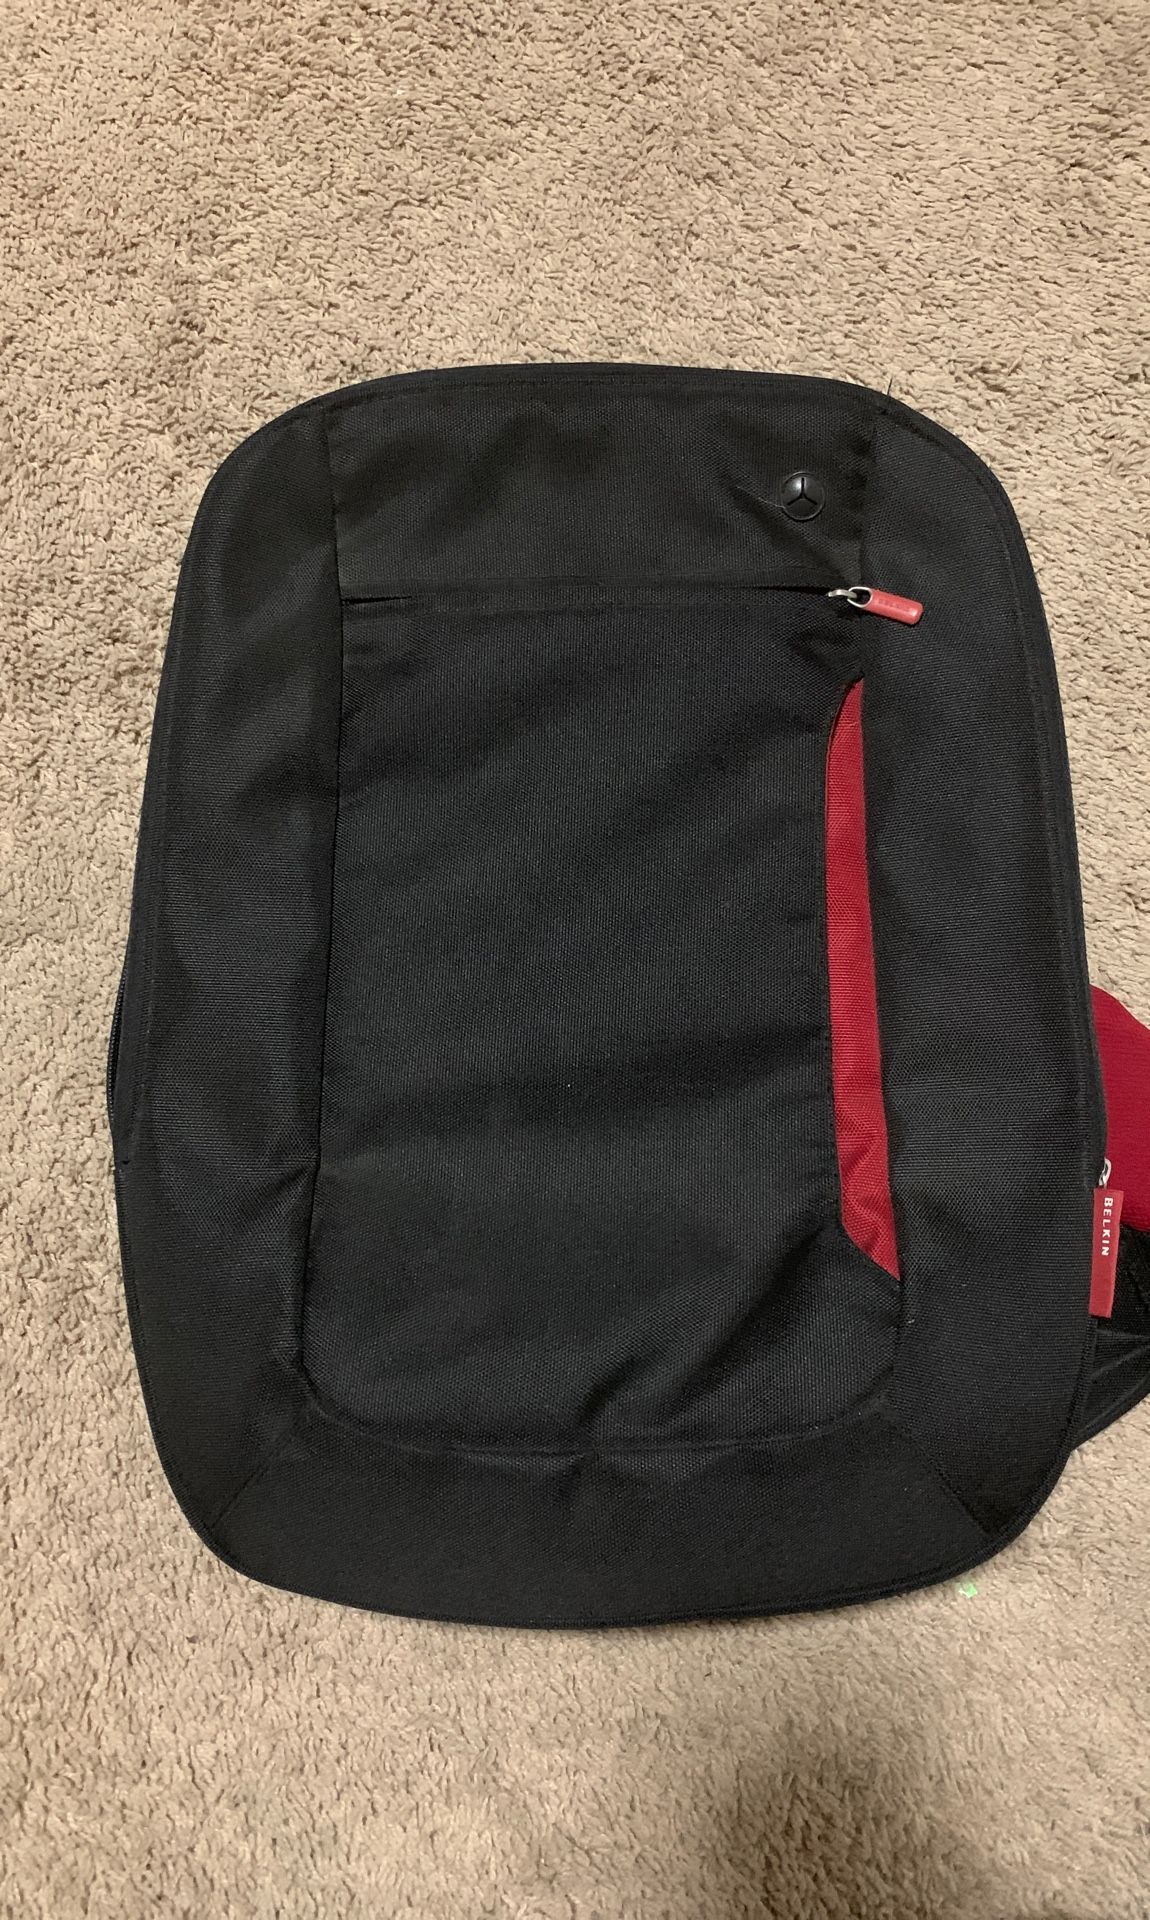 Belkin Impulse Line Slim Backpack For Notebooks Up To 17-Inch, Jet/Cabernet